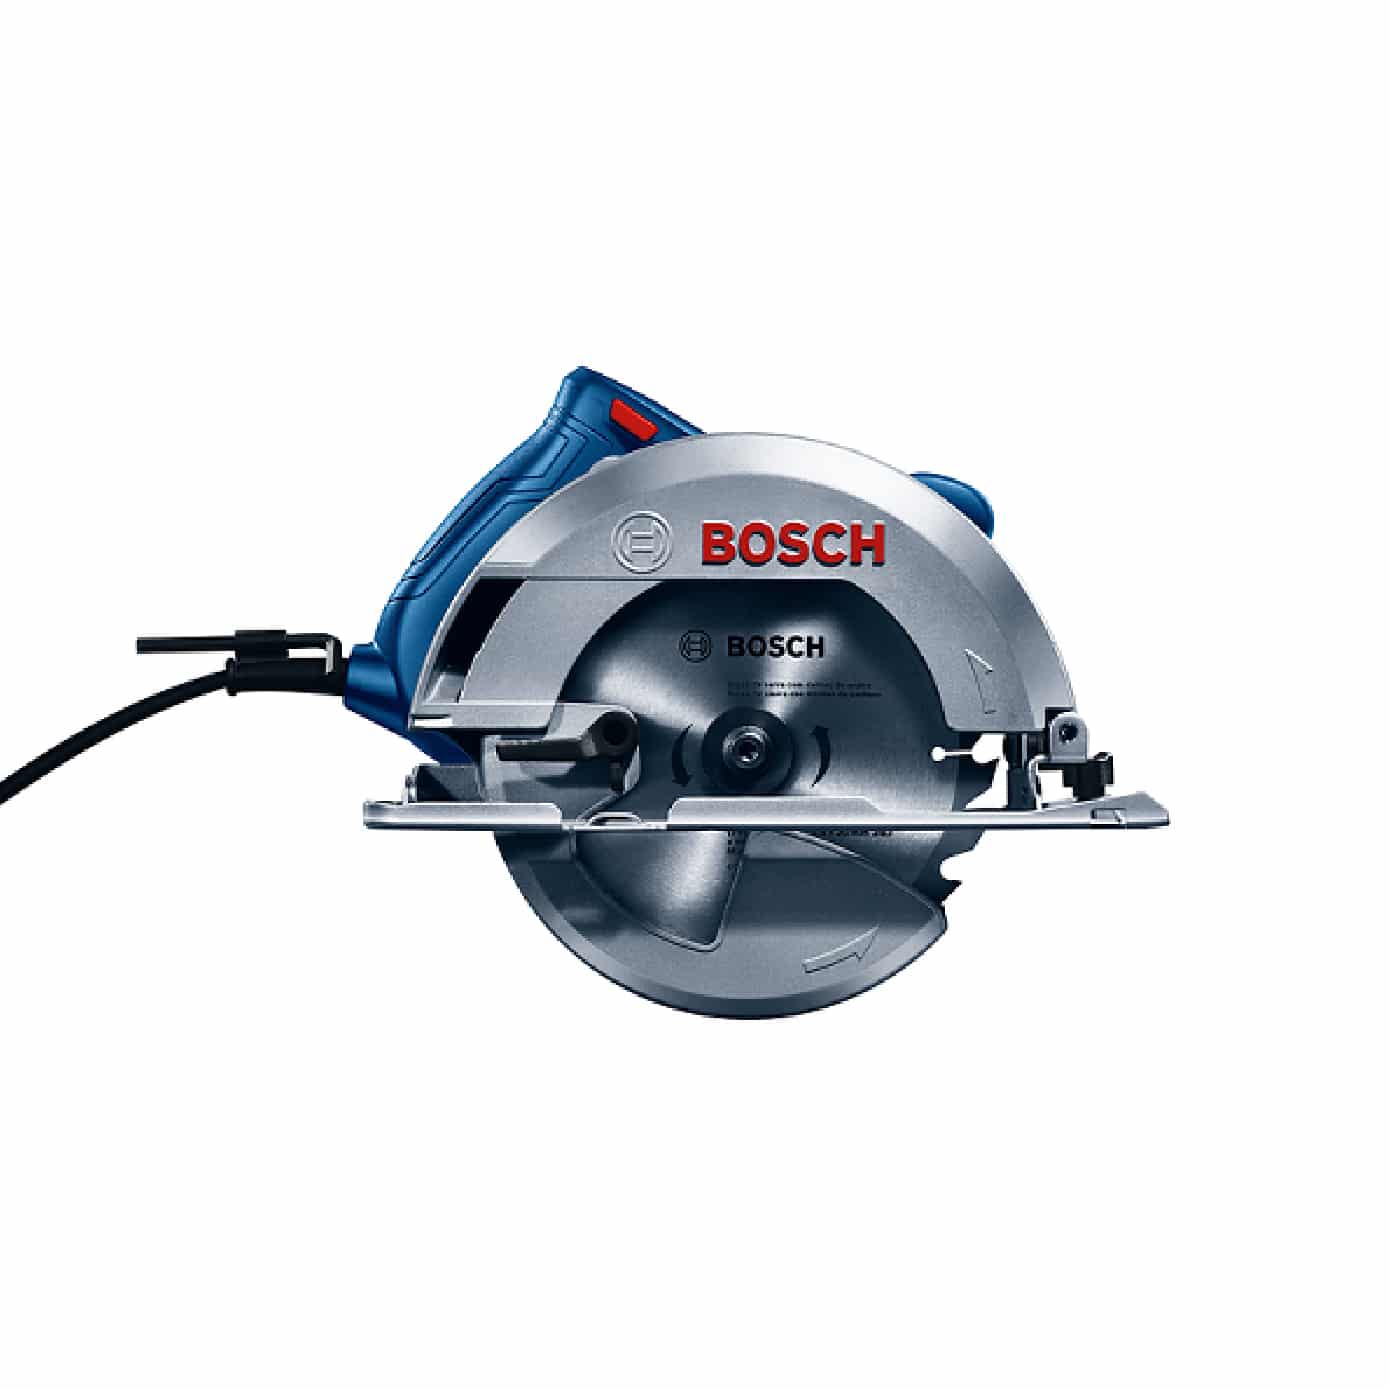 HC117845 - Sierra Circular 1500w 06016B30G0 Bosch Gks150 -